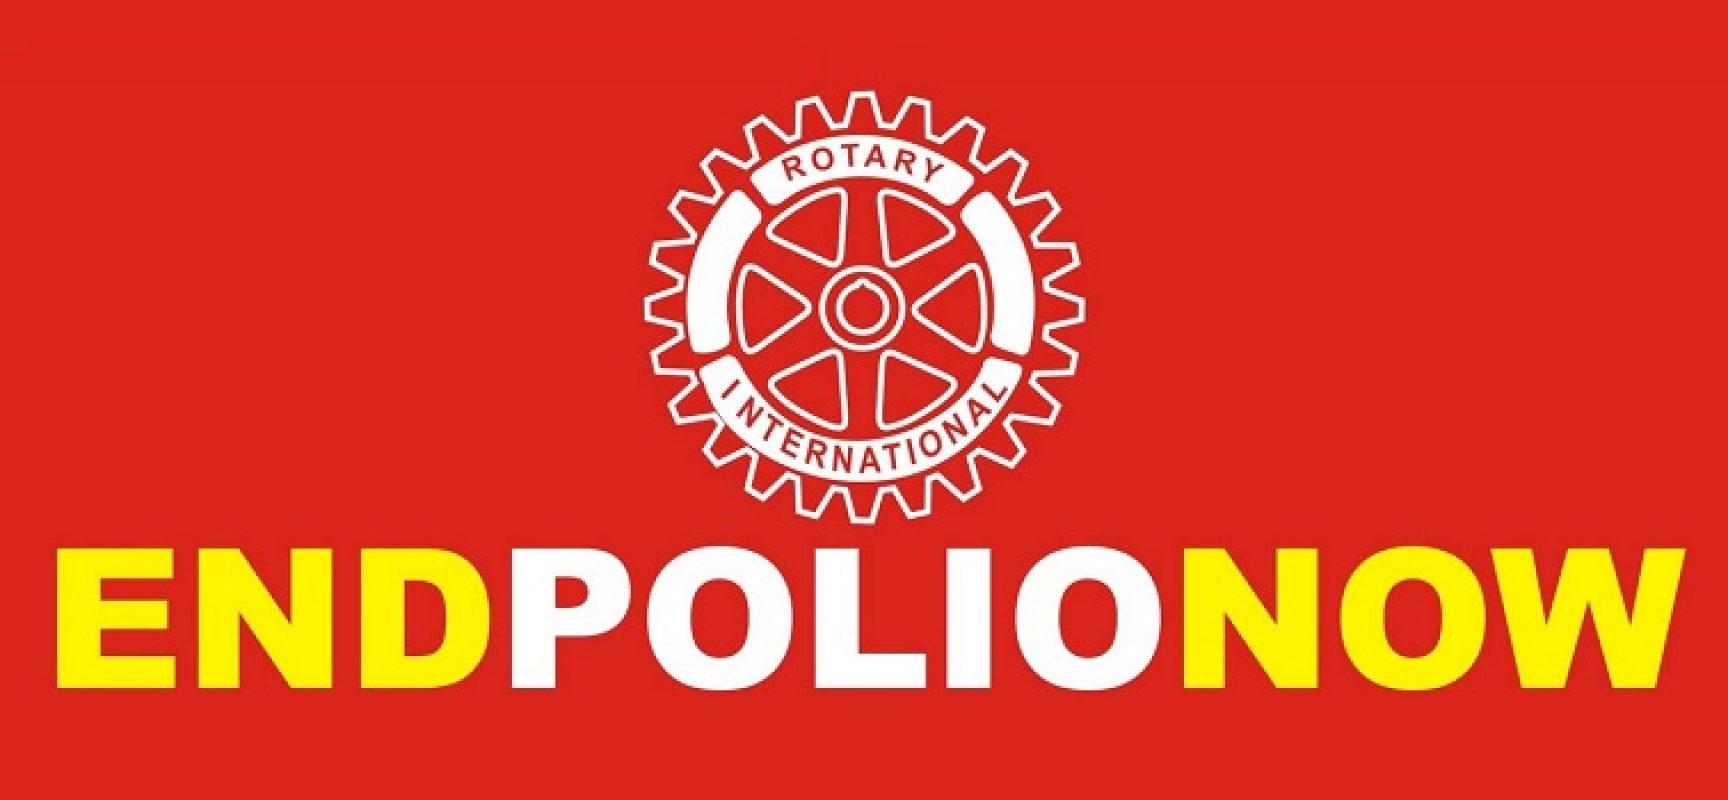 Sabato 4 novembre l’evento “End Polio Now” per la lotta alla poliomielite